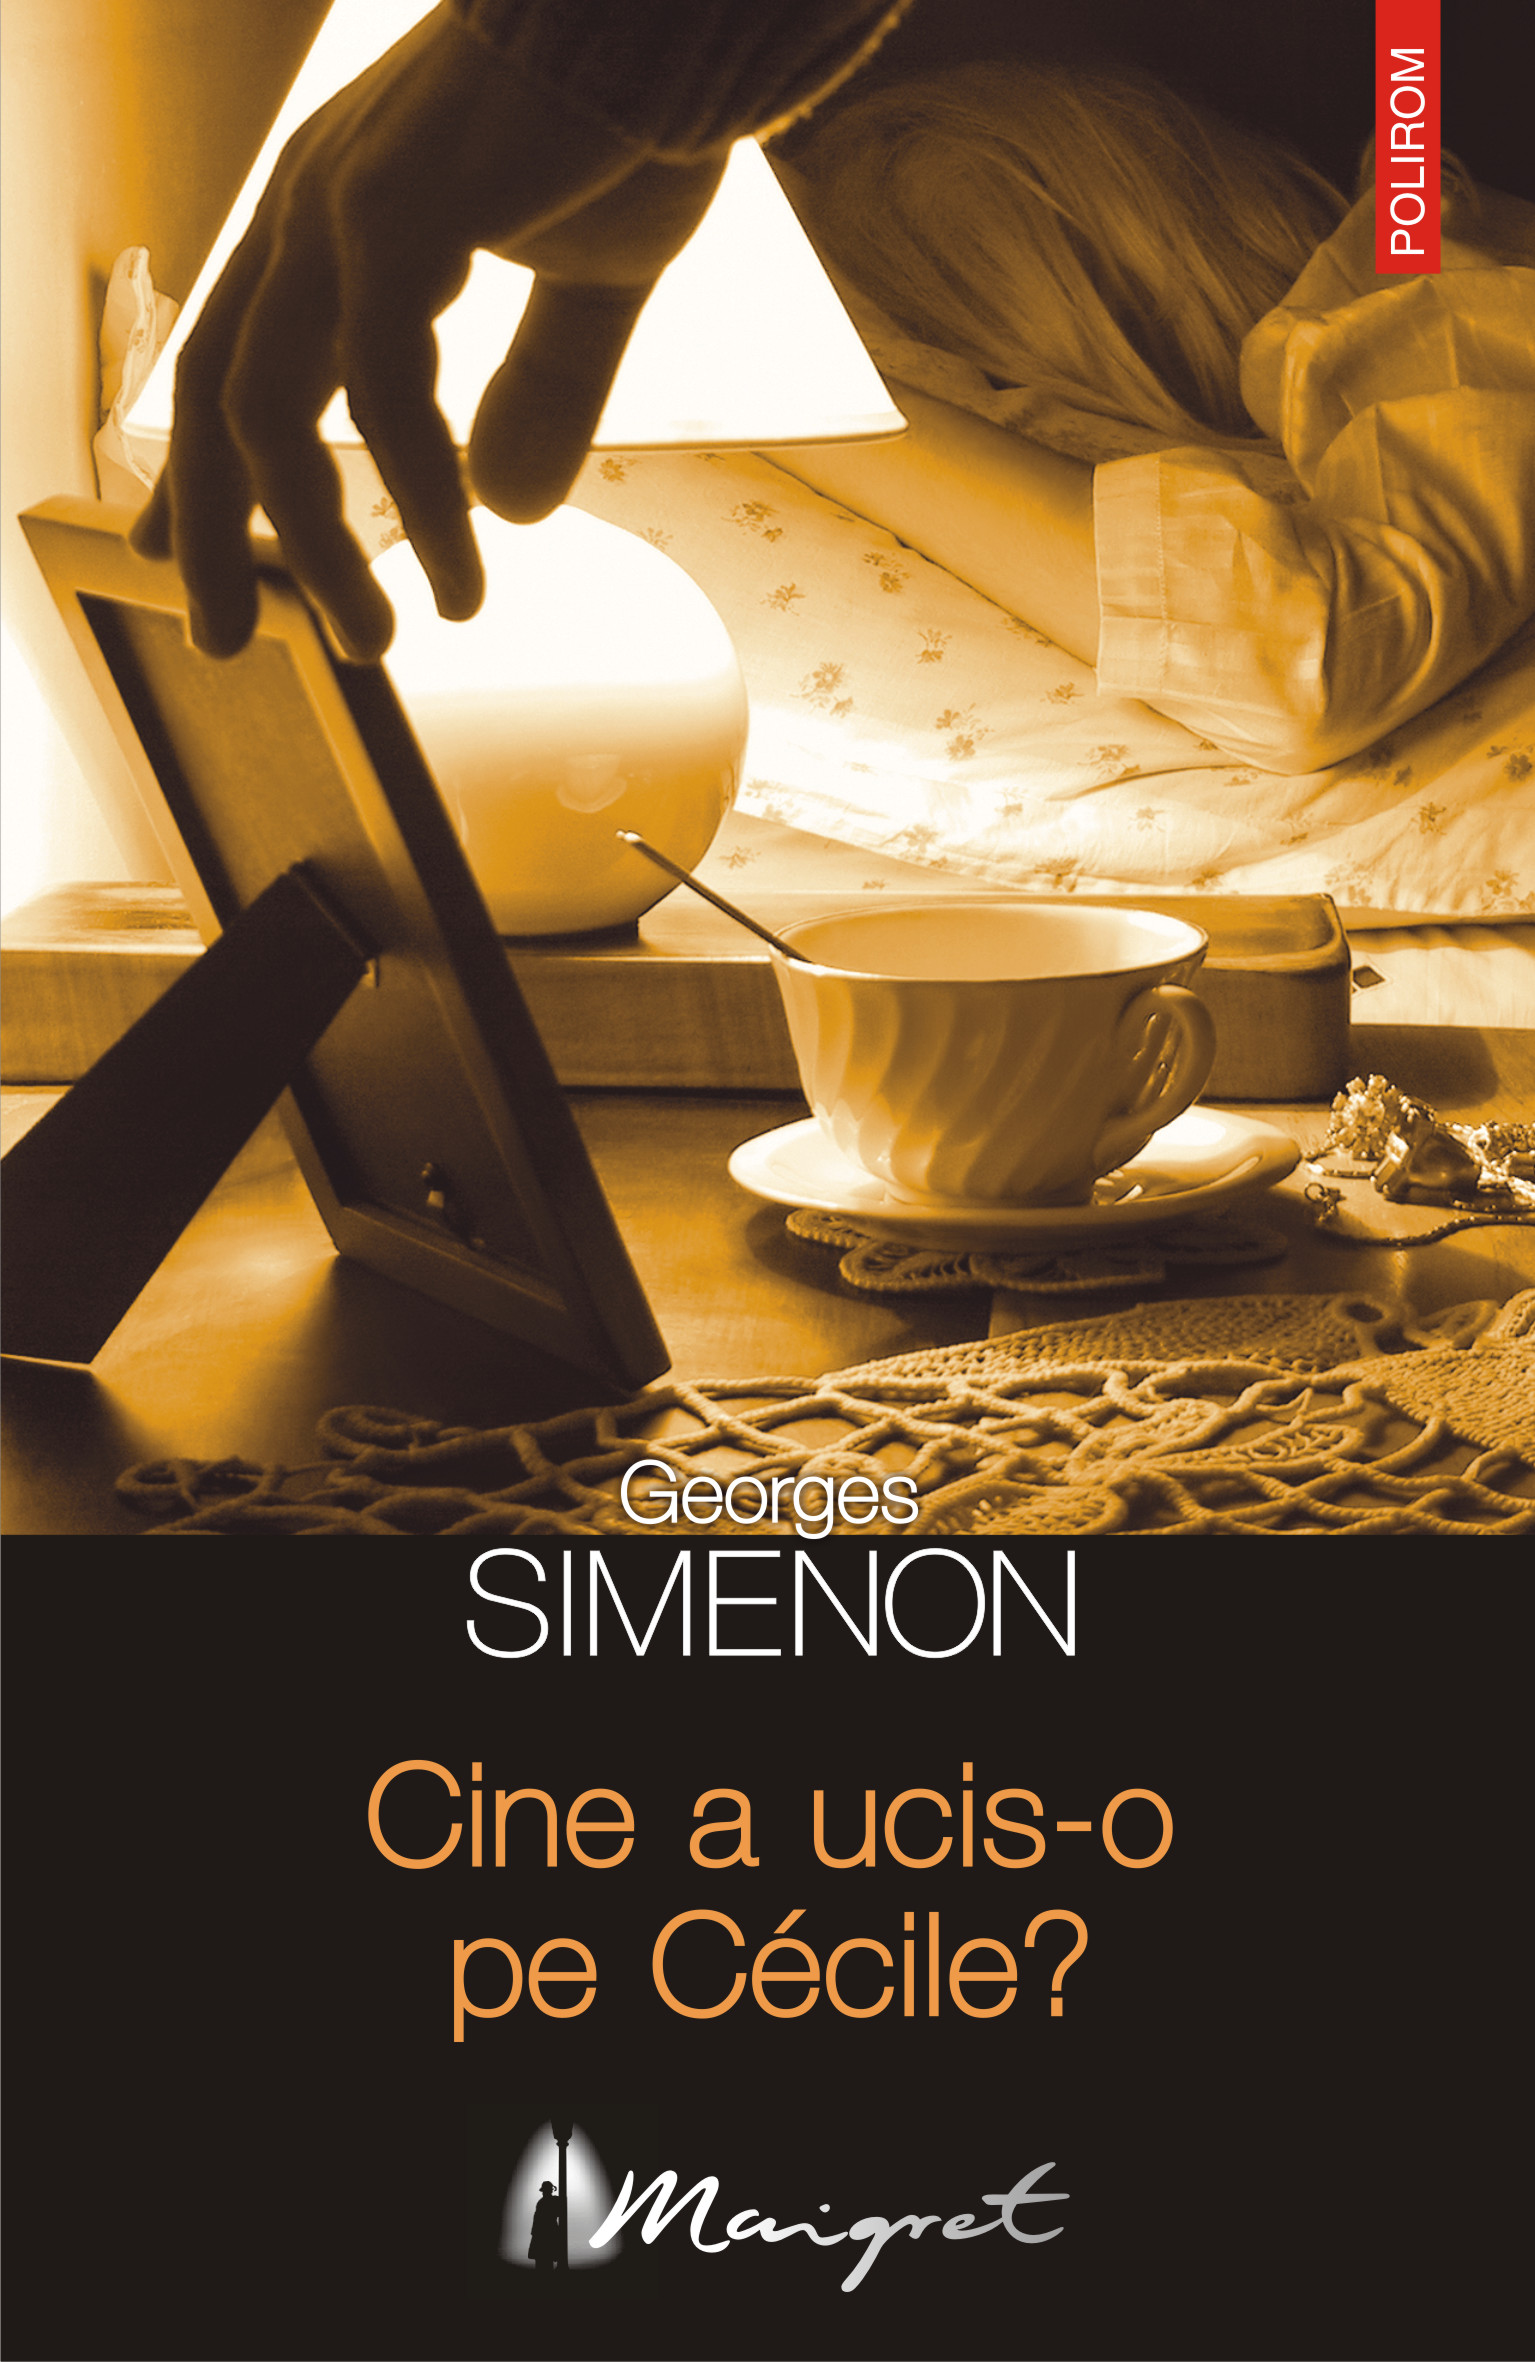 eBook Cine a ucis-o pe Cecile - Georges Simenon